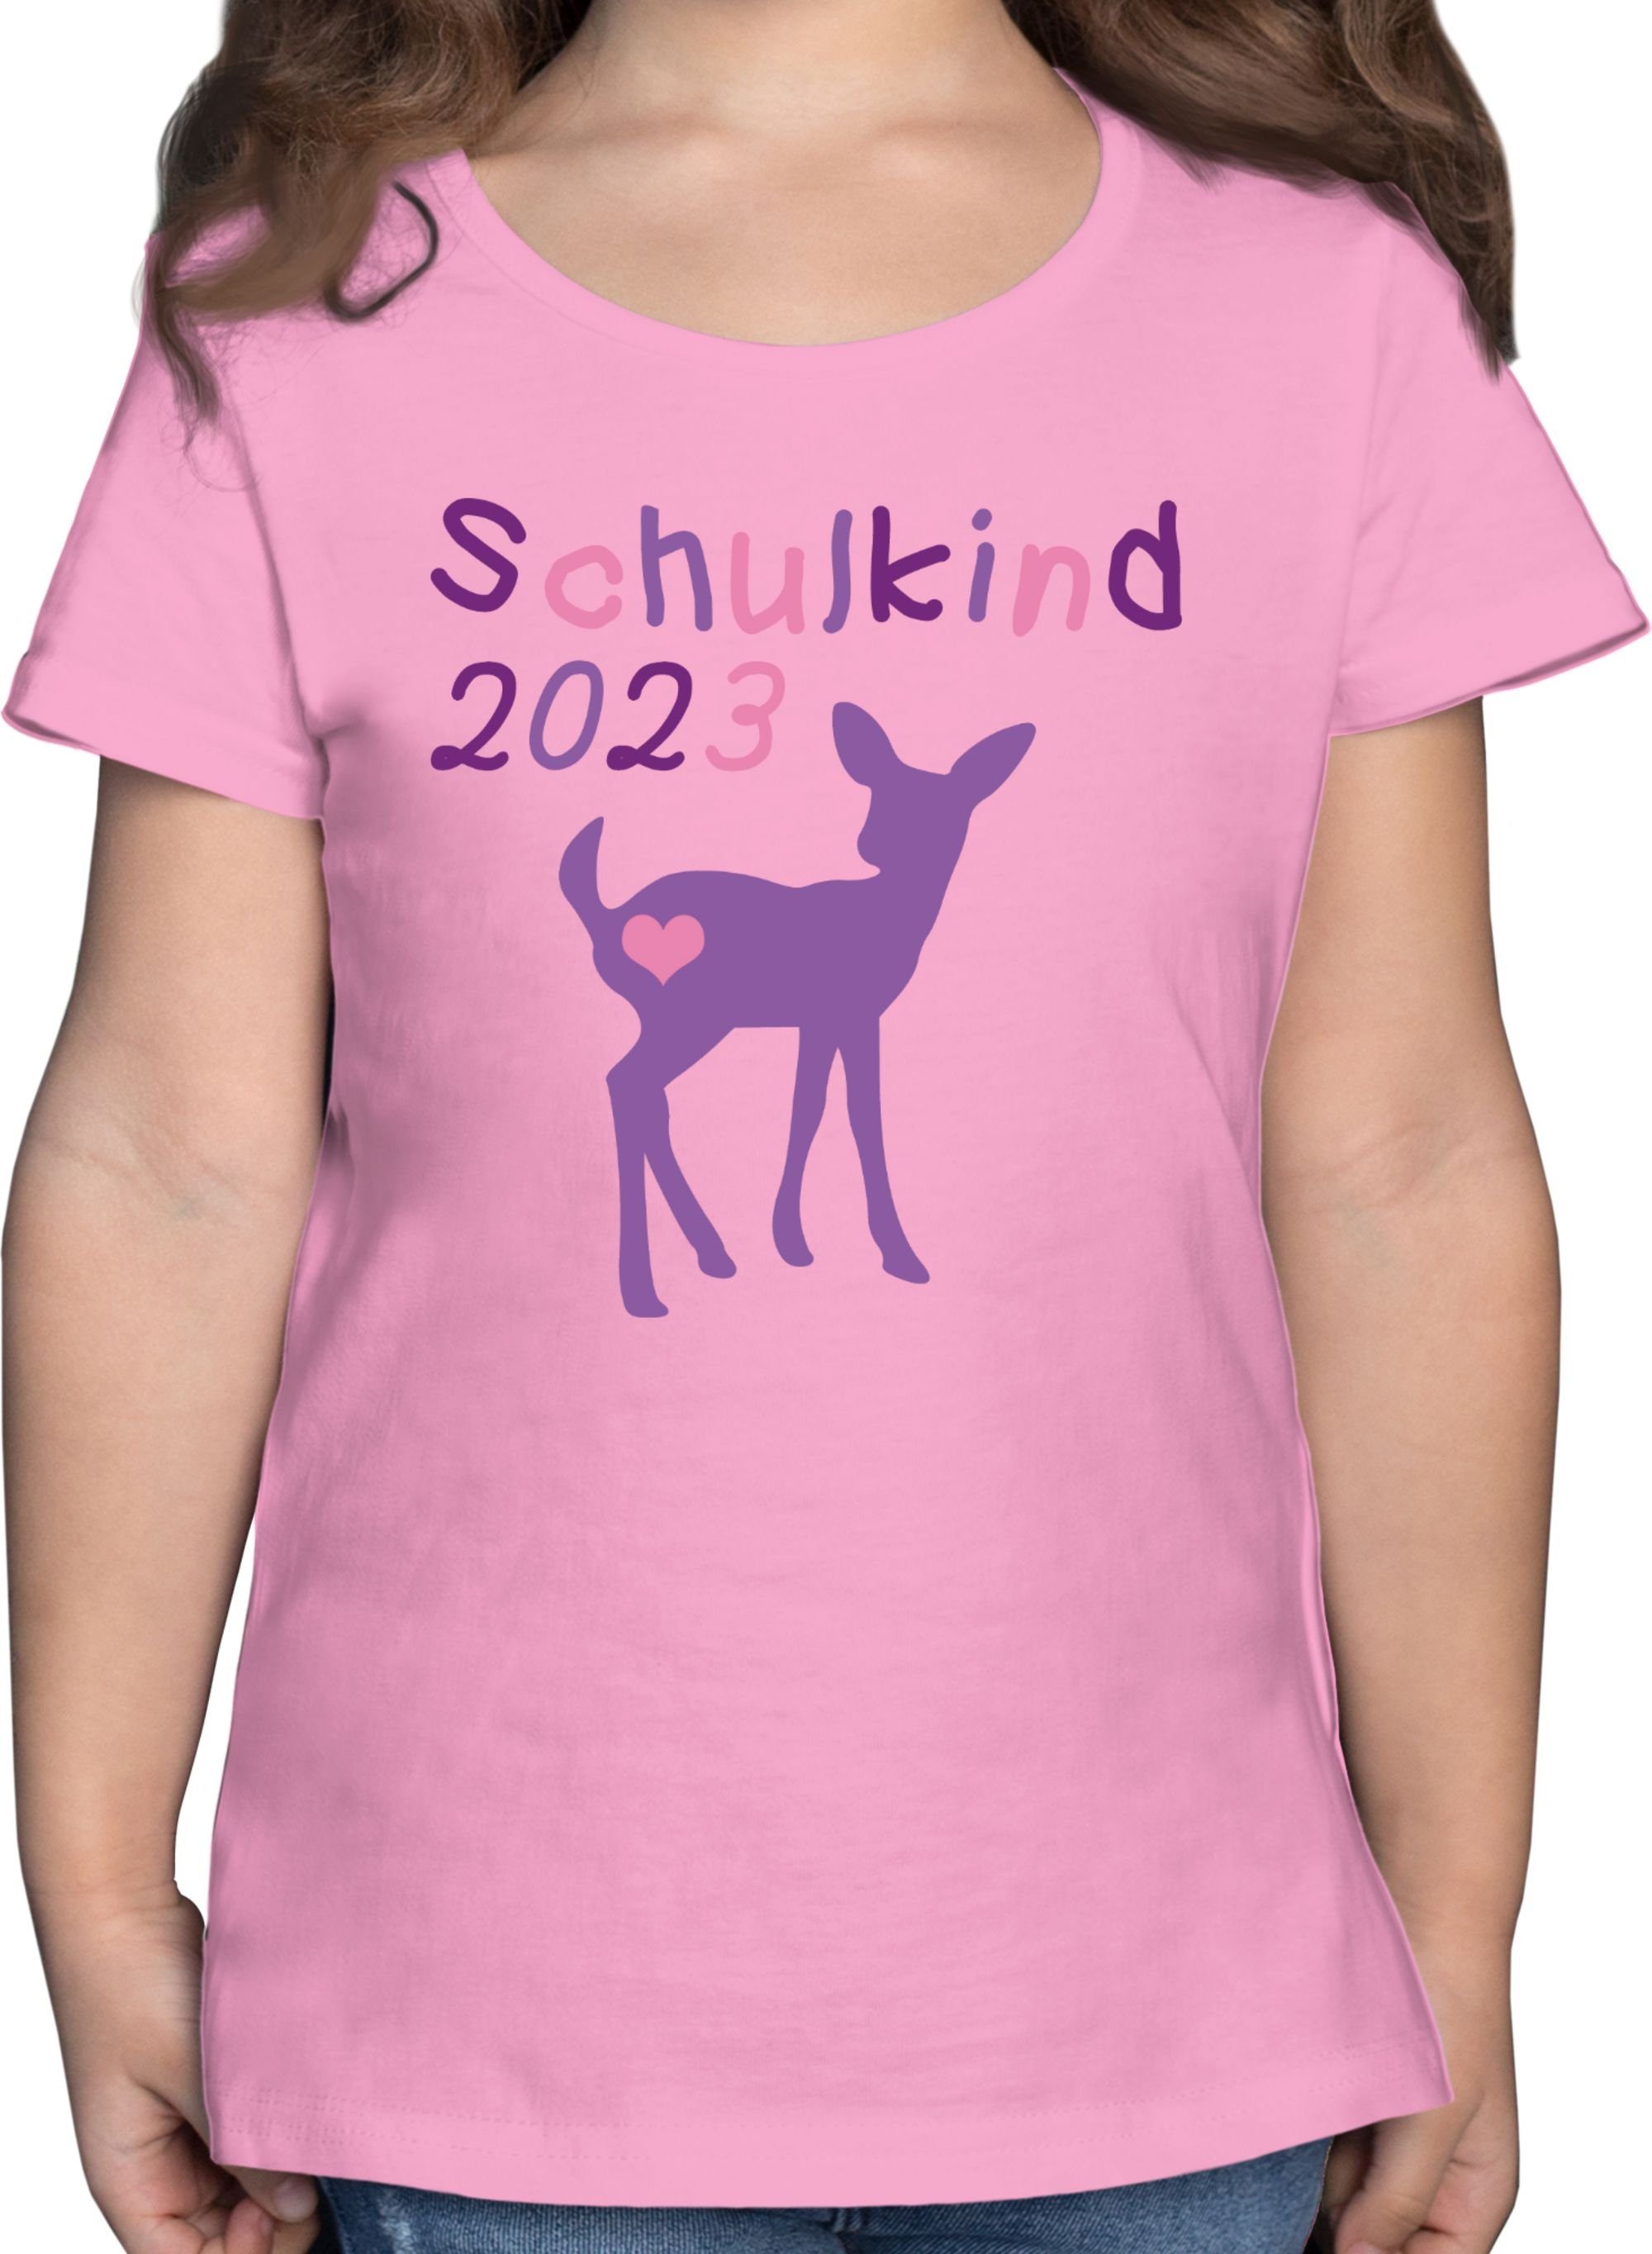 Schulkind 2023 Rosa Reh 1 T-Shirt Mädchen Shirtracer Kitz Einschulung Lila